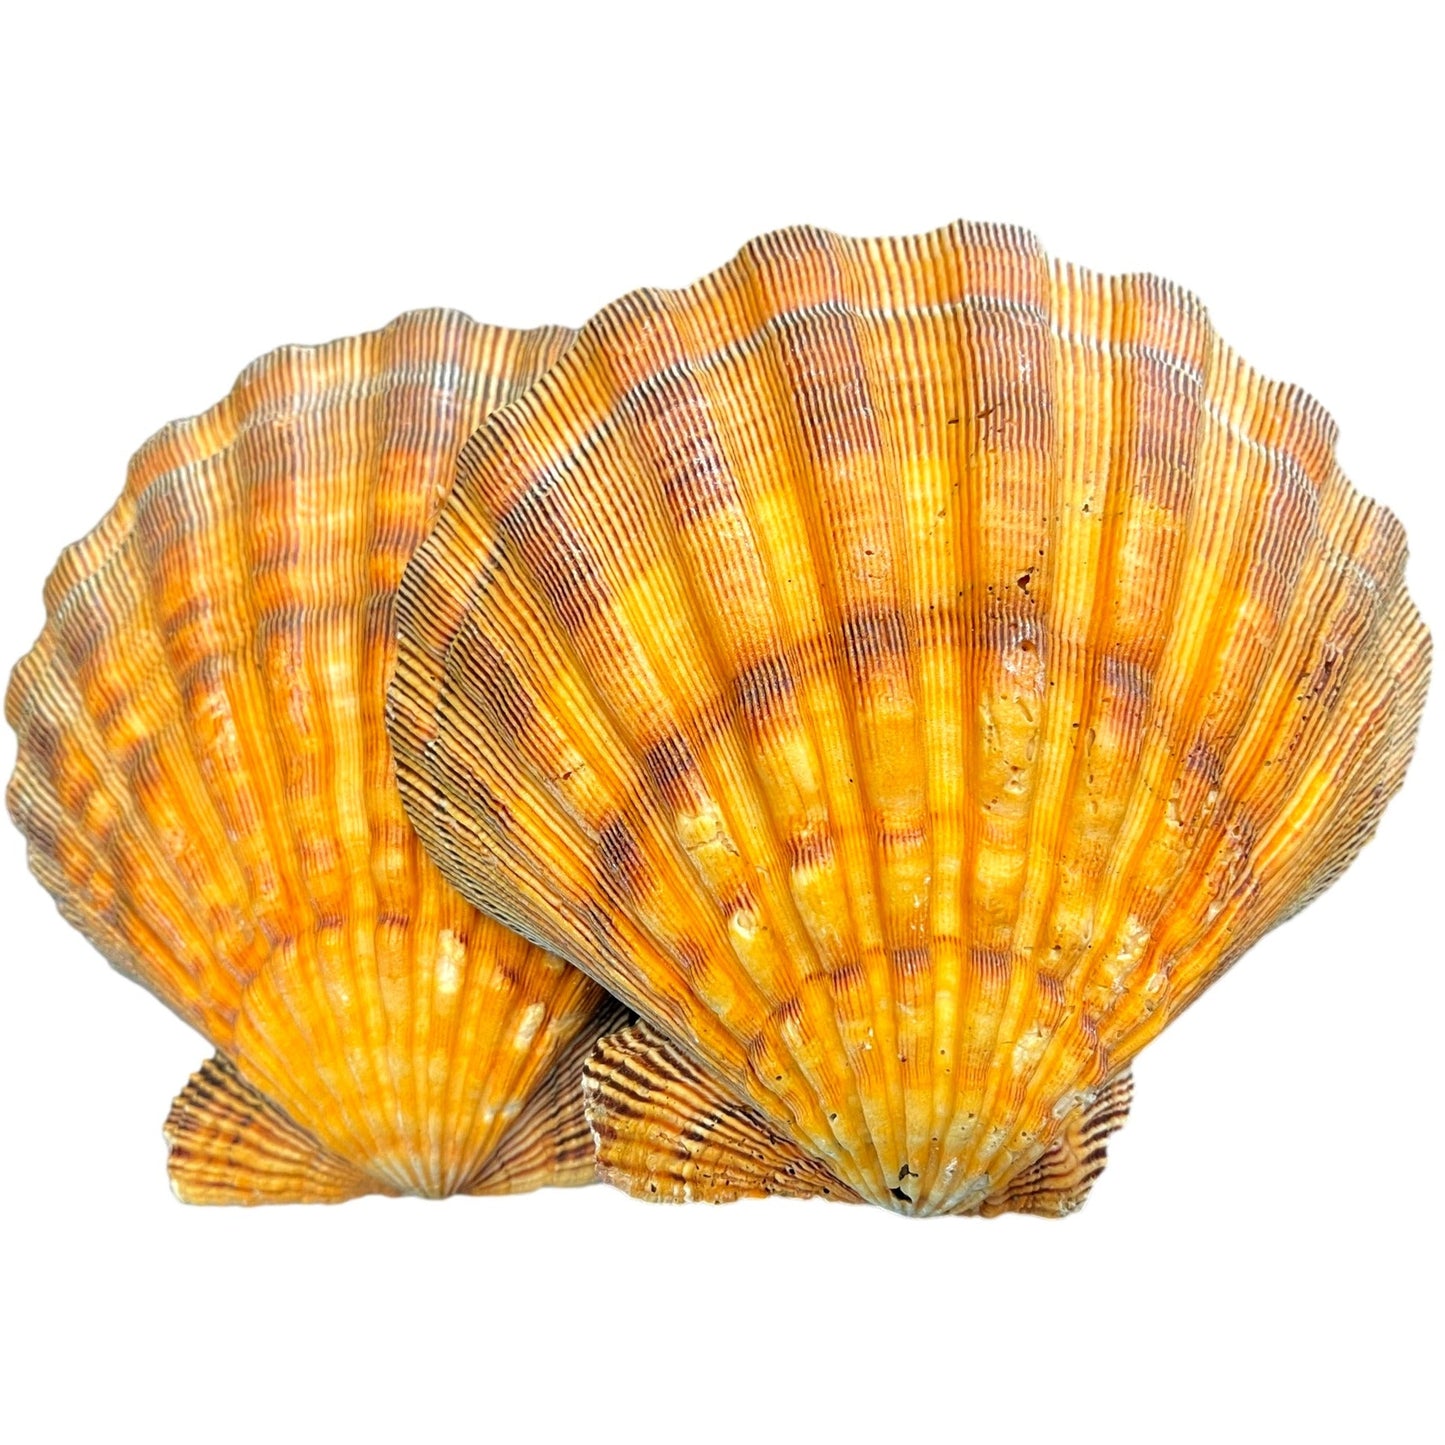 Lions Paw Scallop Sea Shell